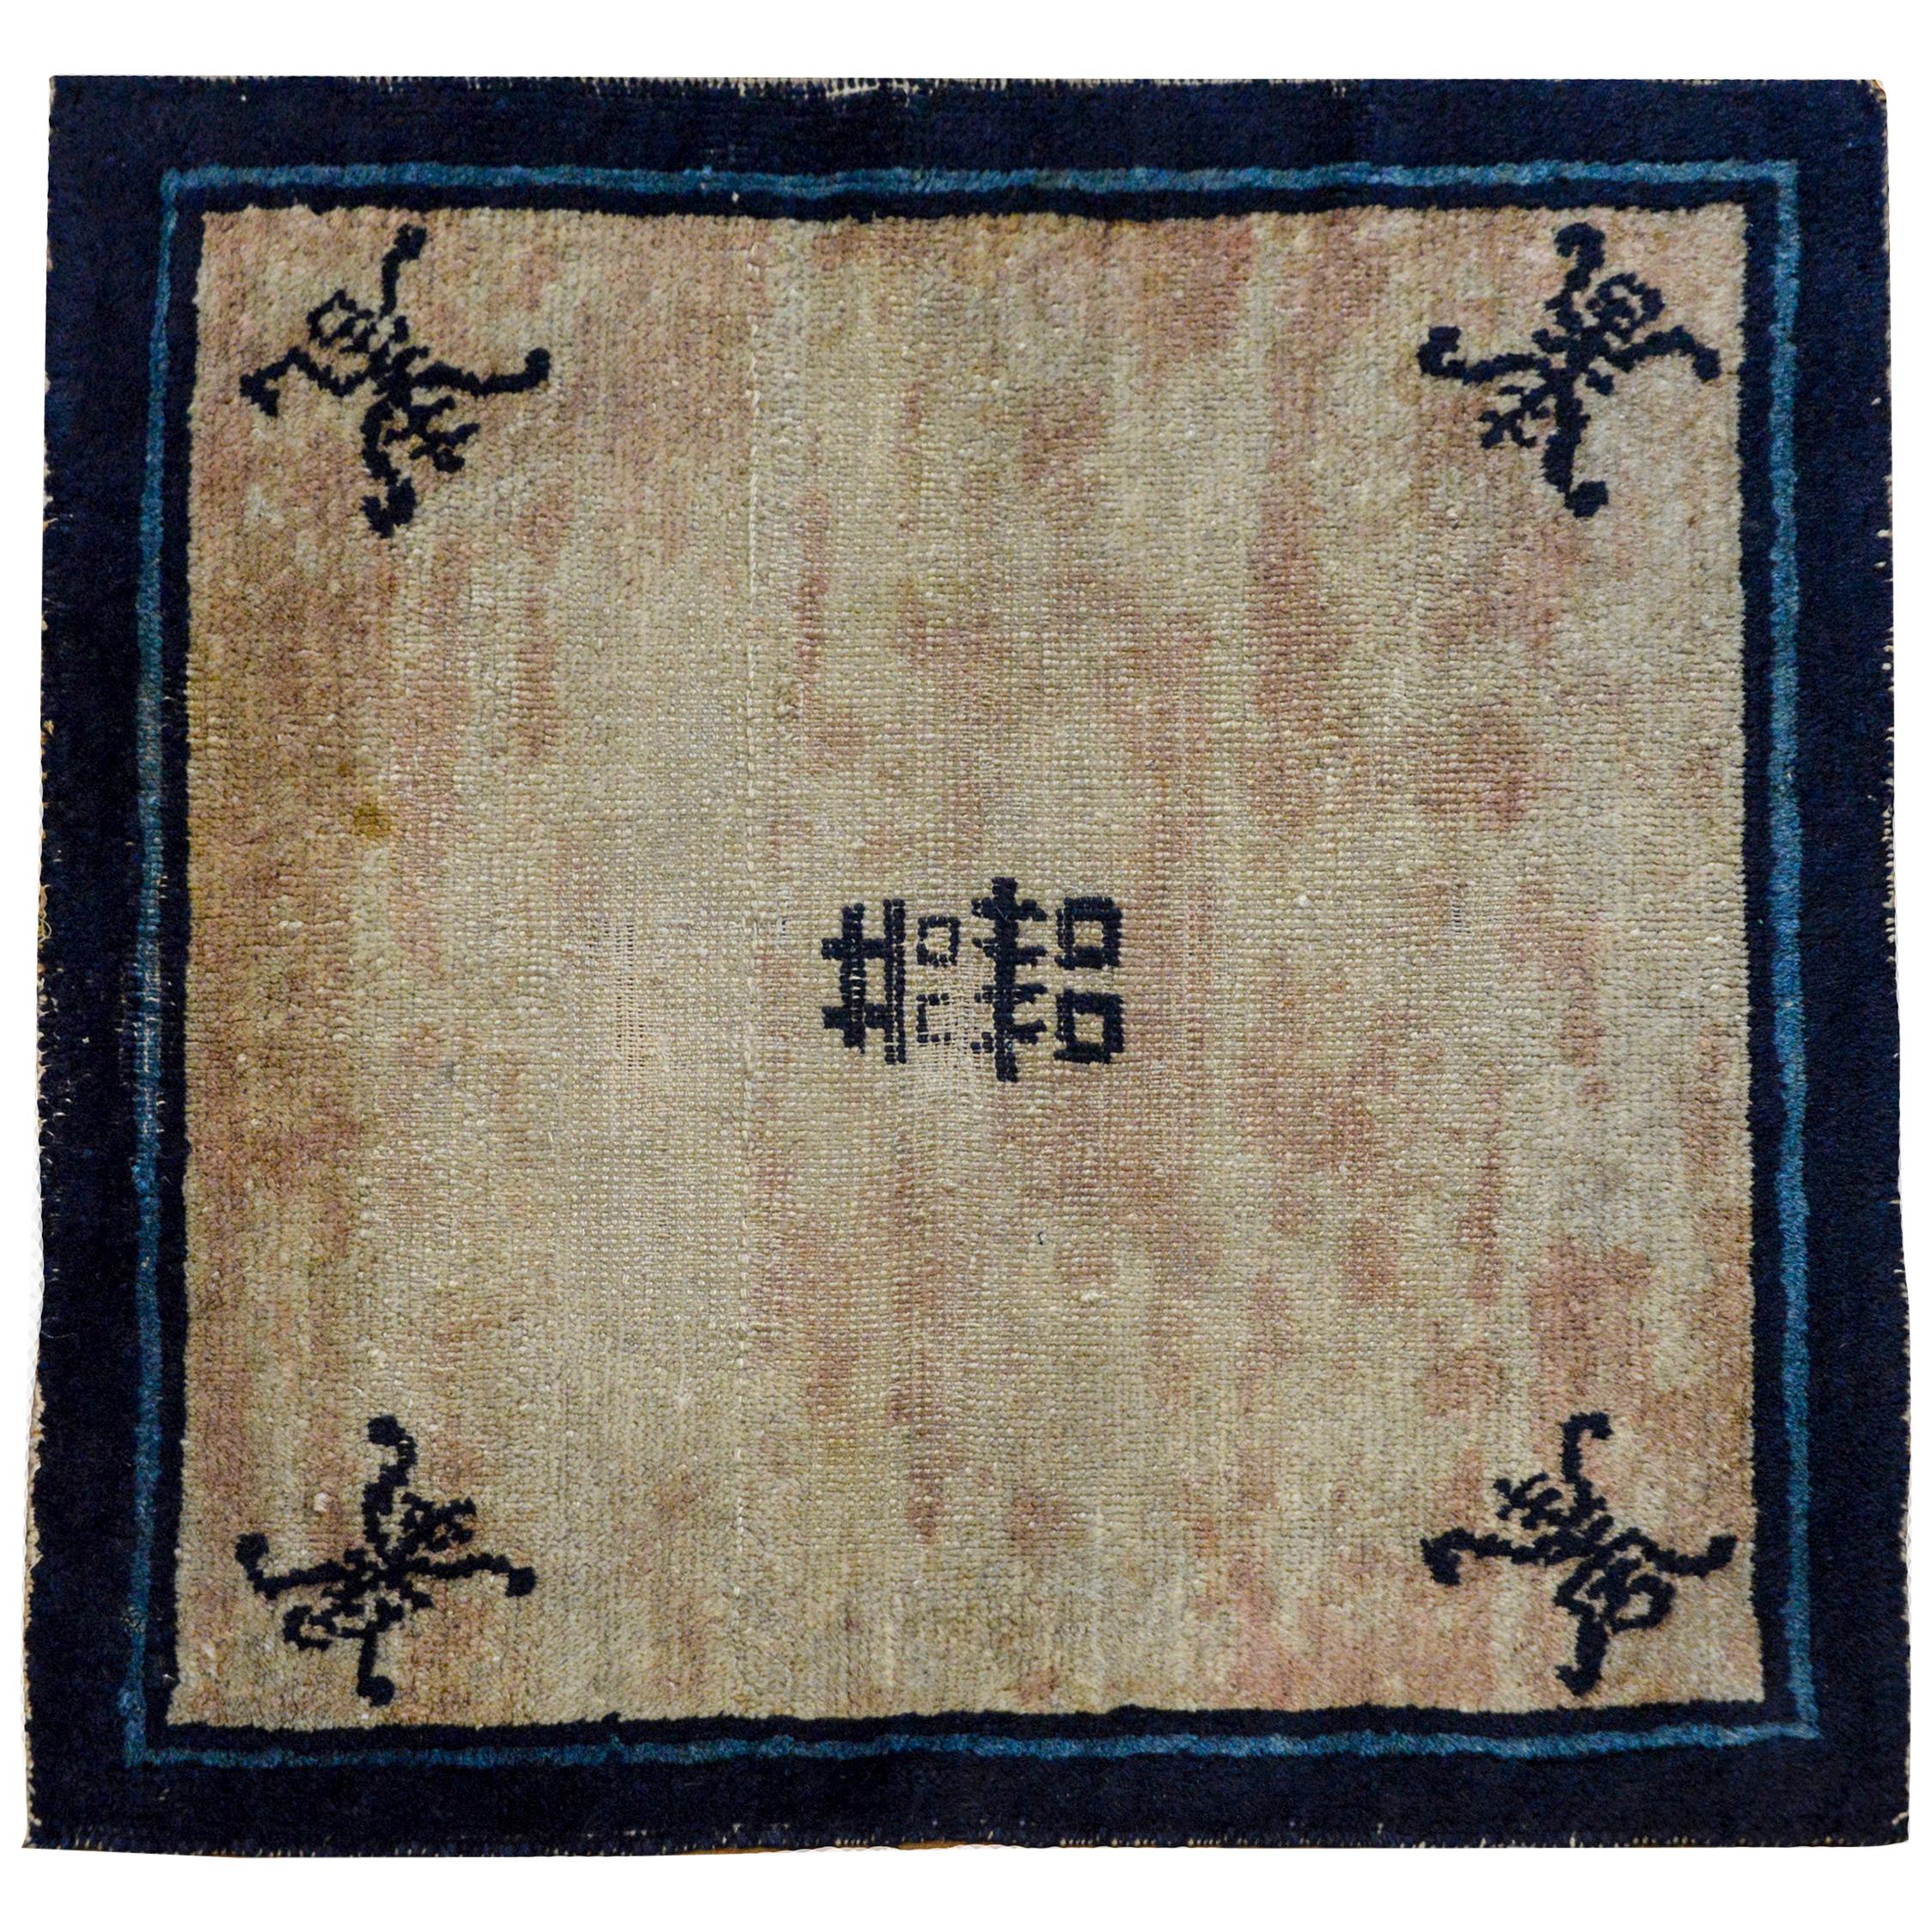 Chinesischer Peking-Teppich „Double Happiness“ aus dem 19. Jahrhundert